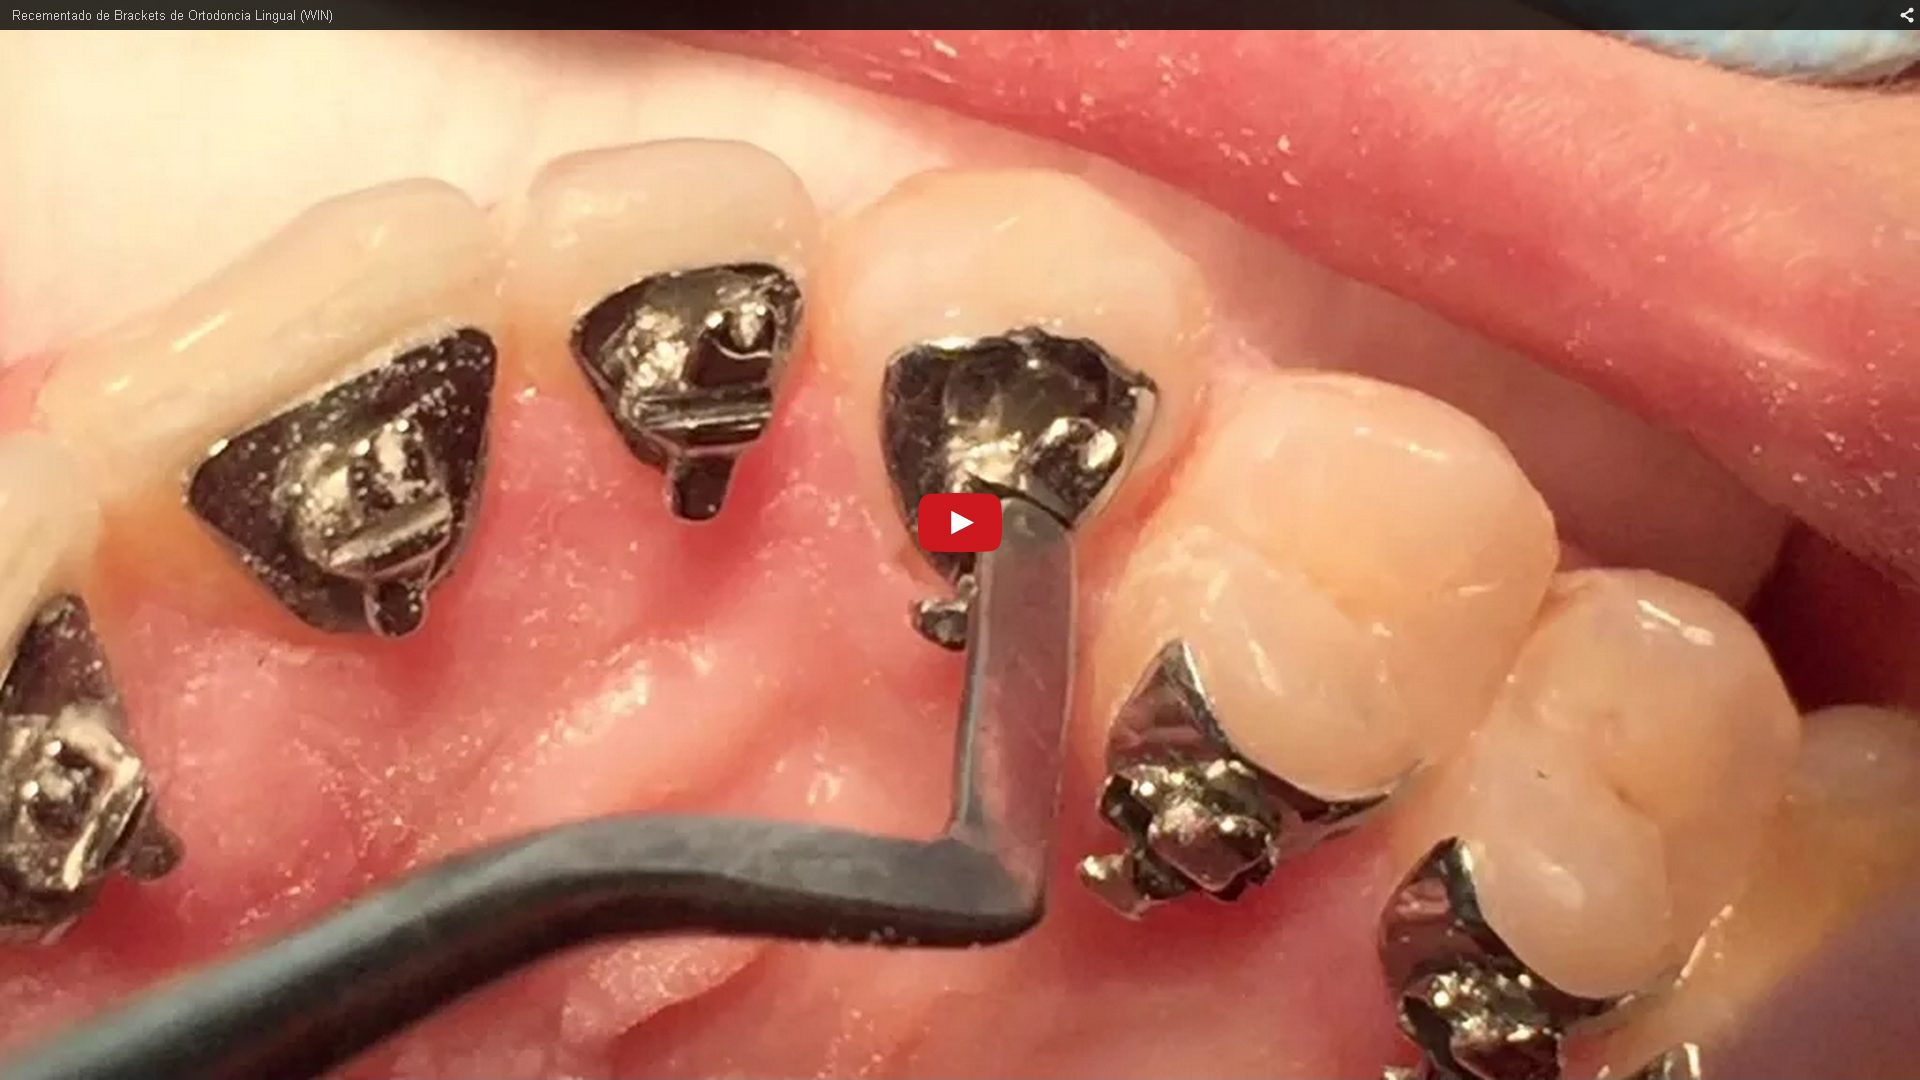 Recementado de brackets linguales|Clínica Dental Ortoperio